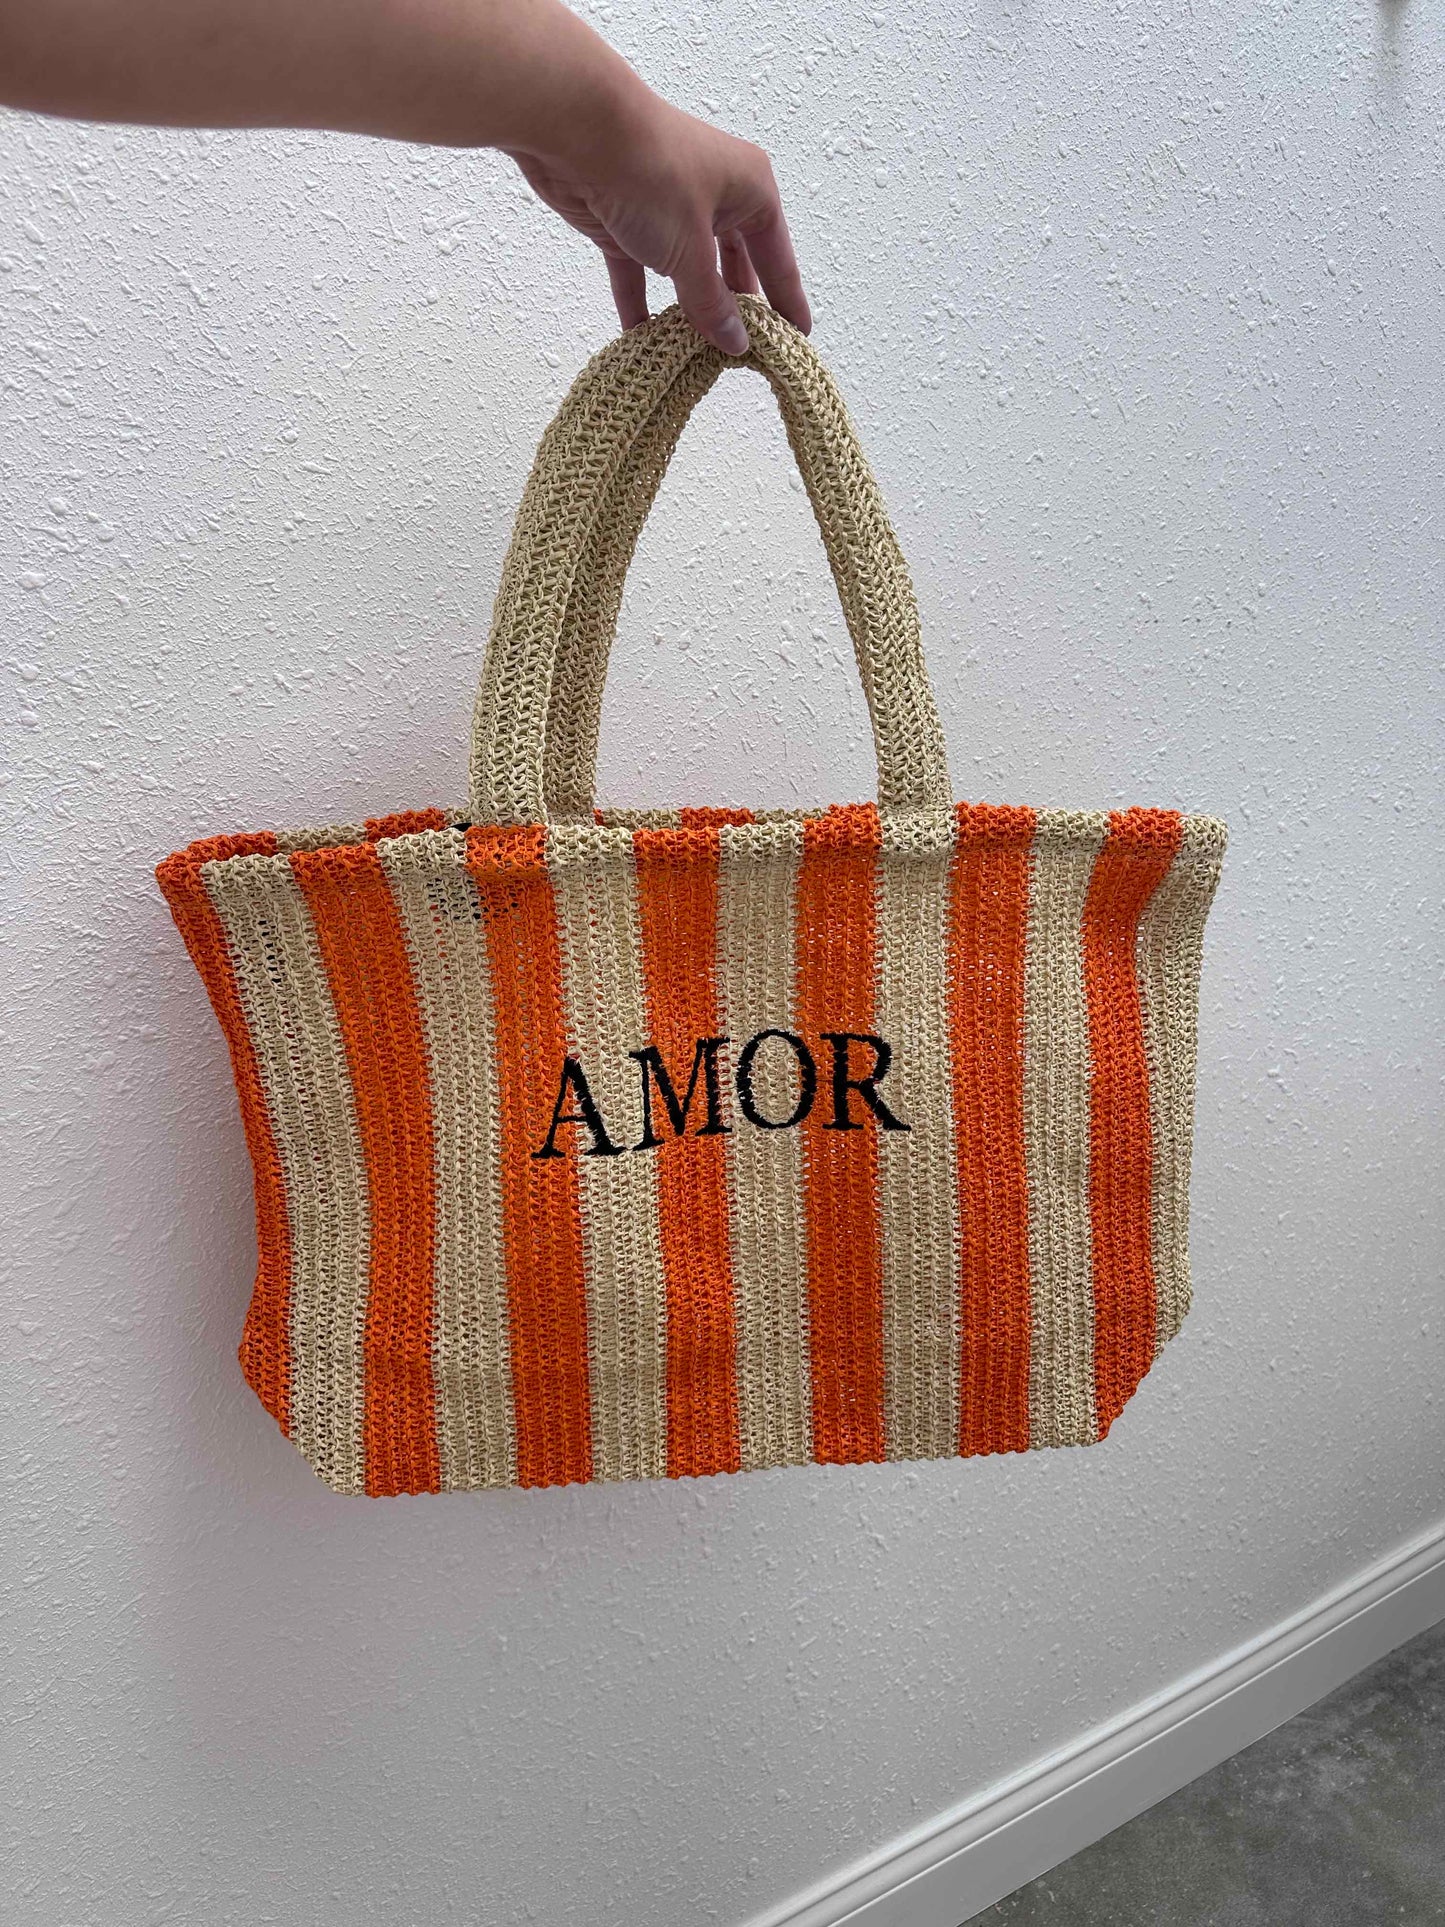 Amor Crochet Bag